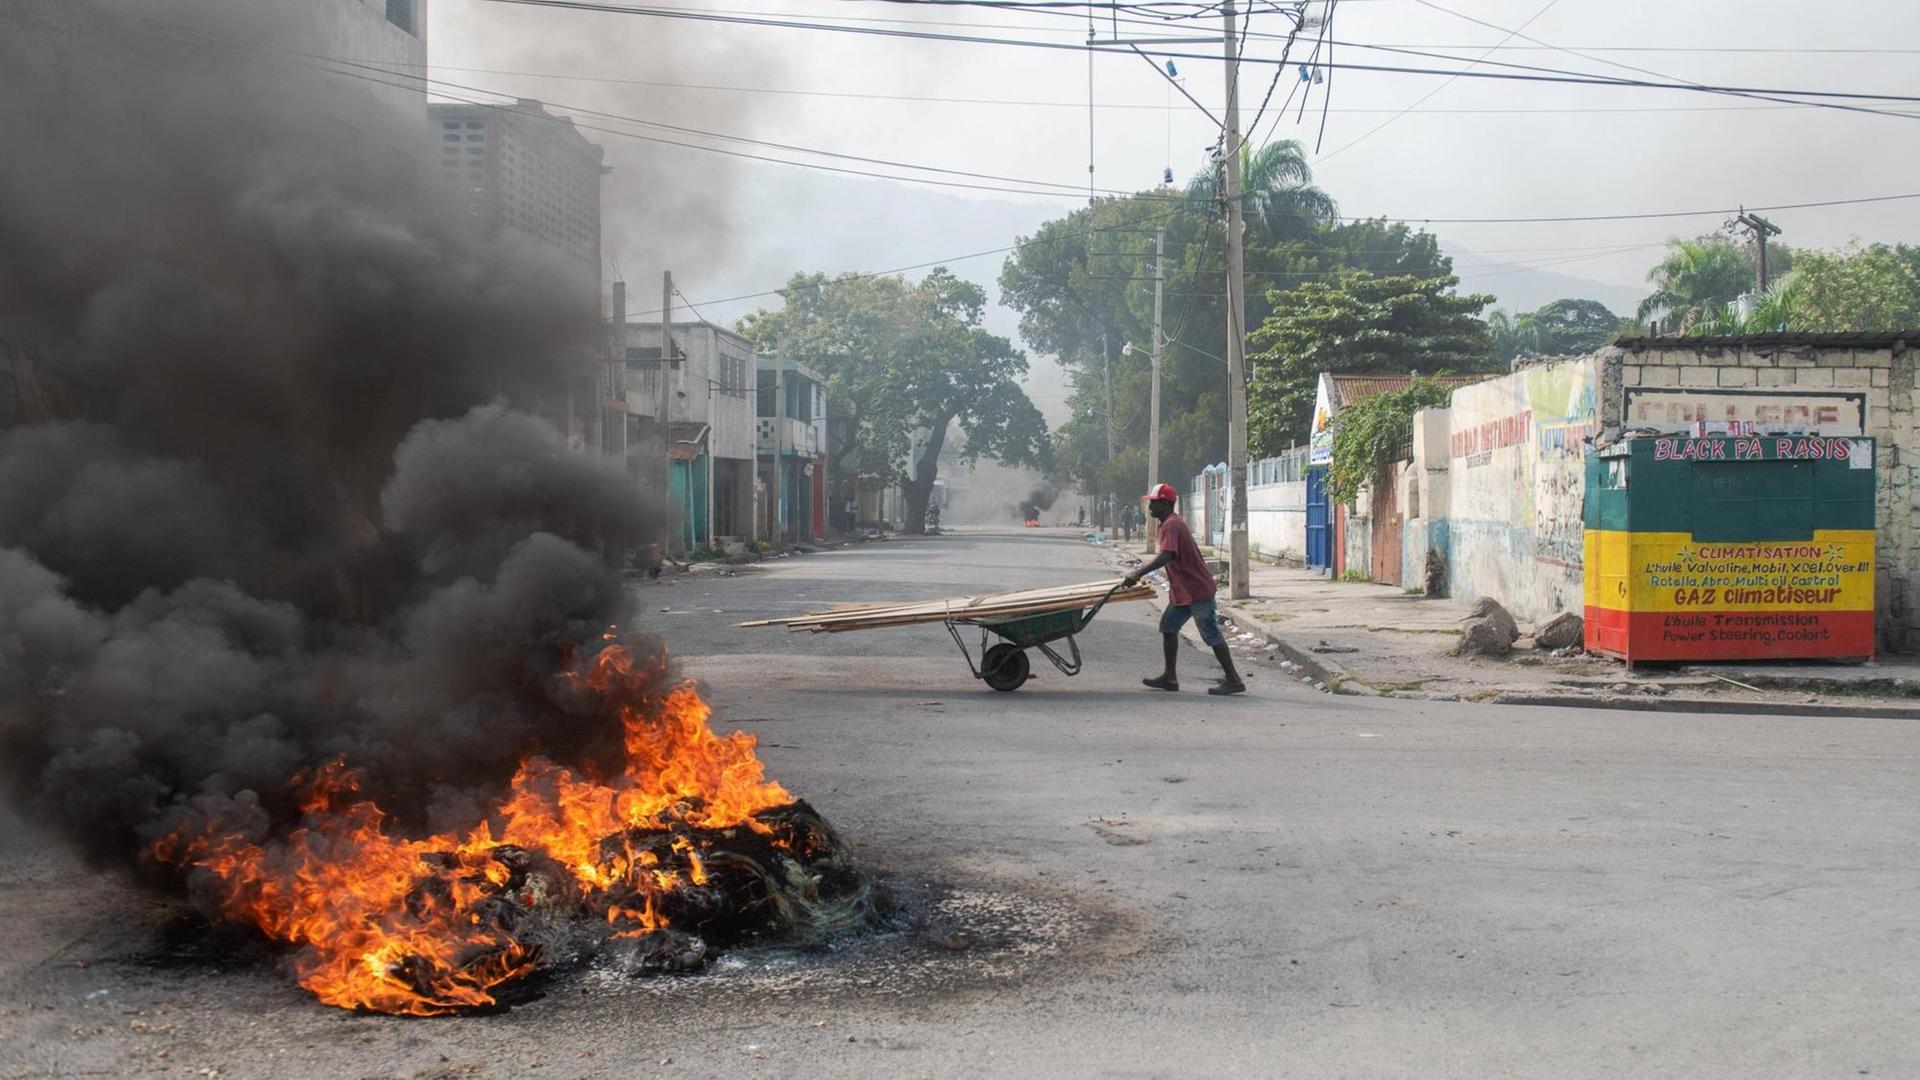 Eine brennende Barrikade in Haitis Hauptstadt Port-au-Prince. Dahinter geht eine Person mit einer Schubkarre die Straße entlang.